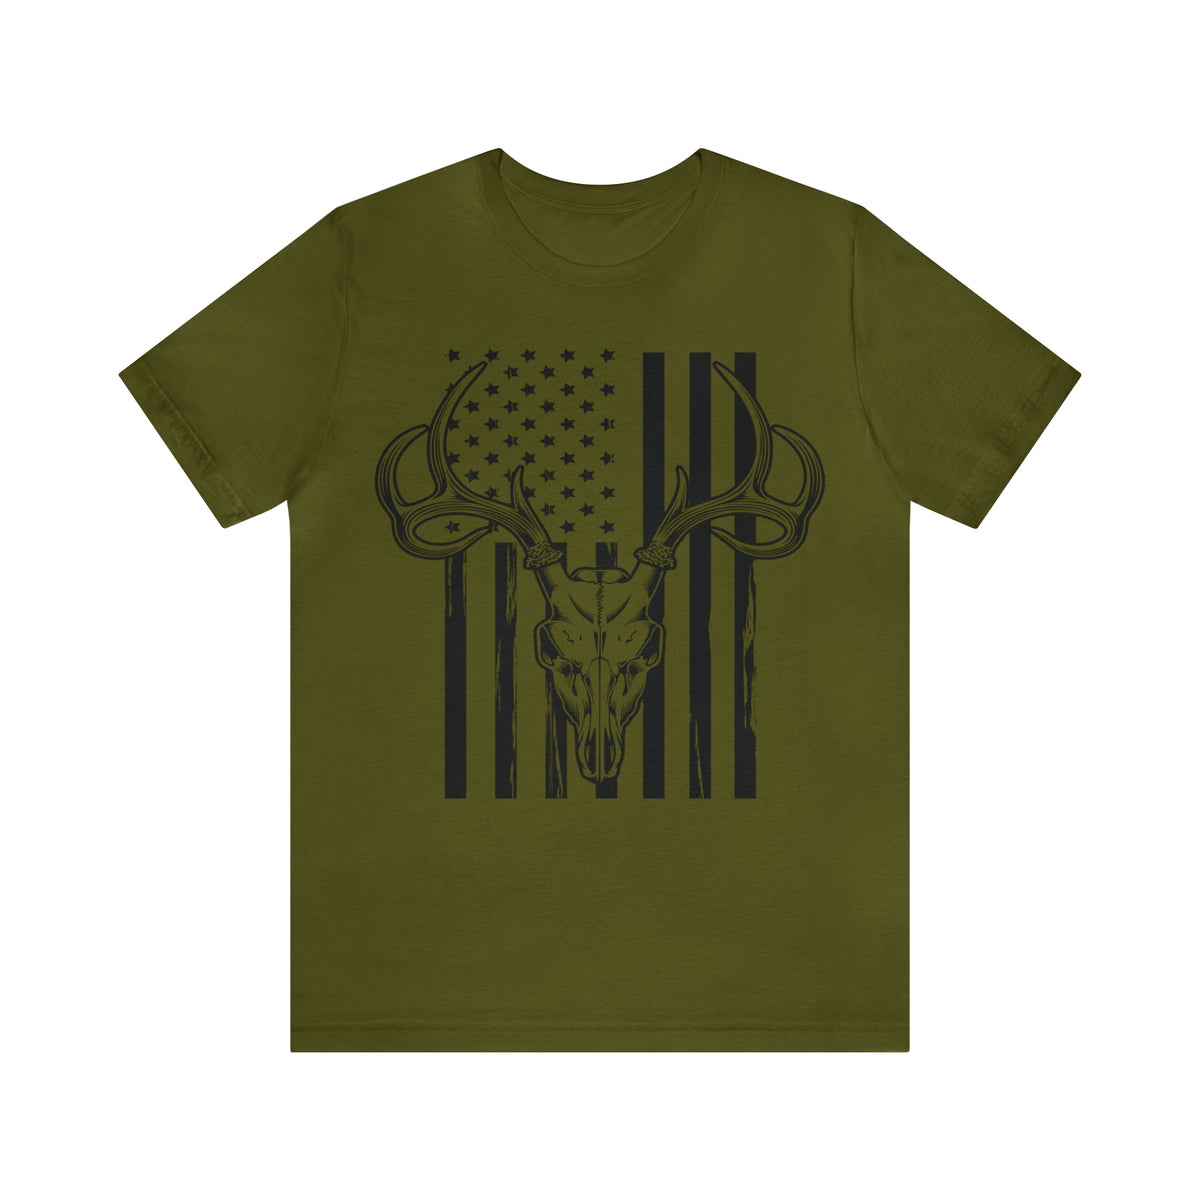 Deer Hunter T-Shirt